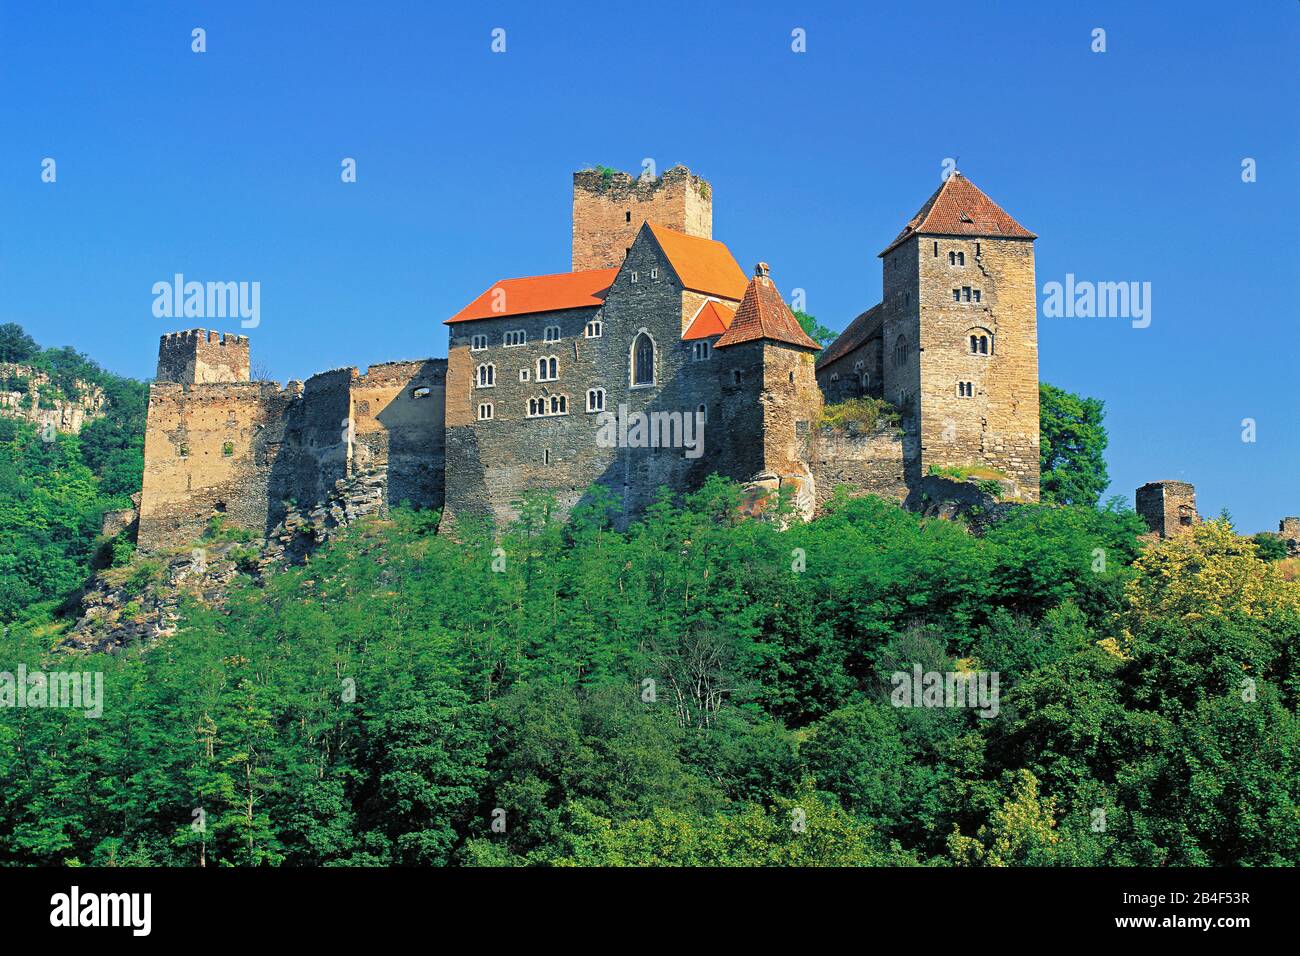 Castle Hardegg in the Waldviertel against blue sky in landscape format, Stock Photo